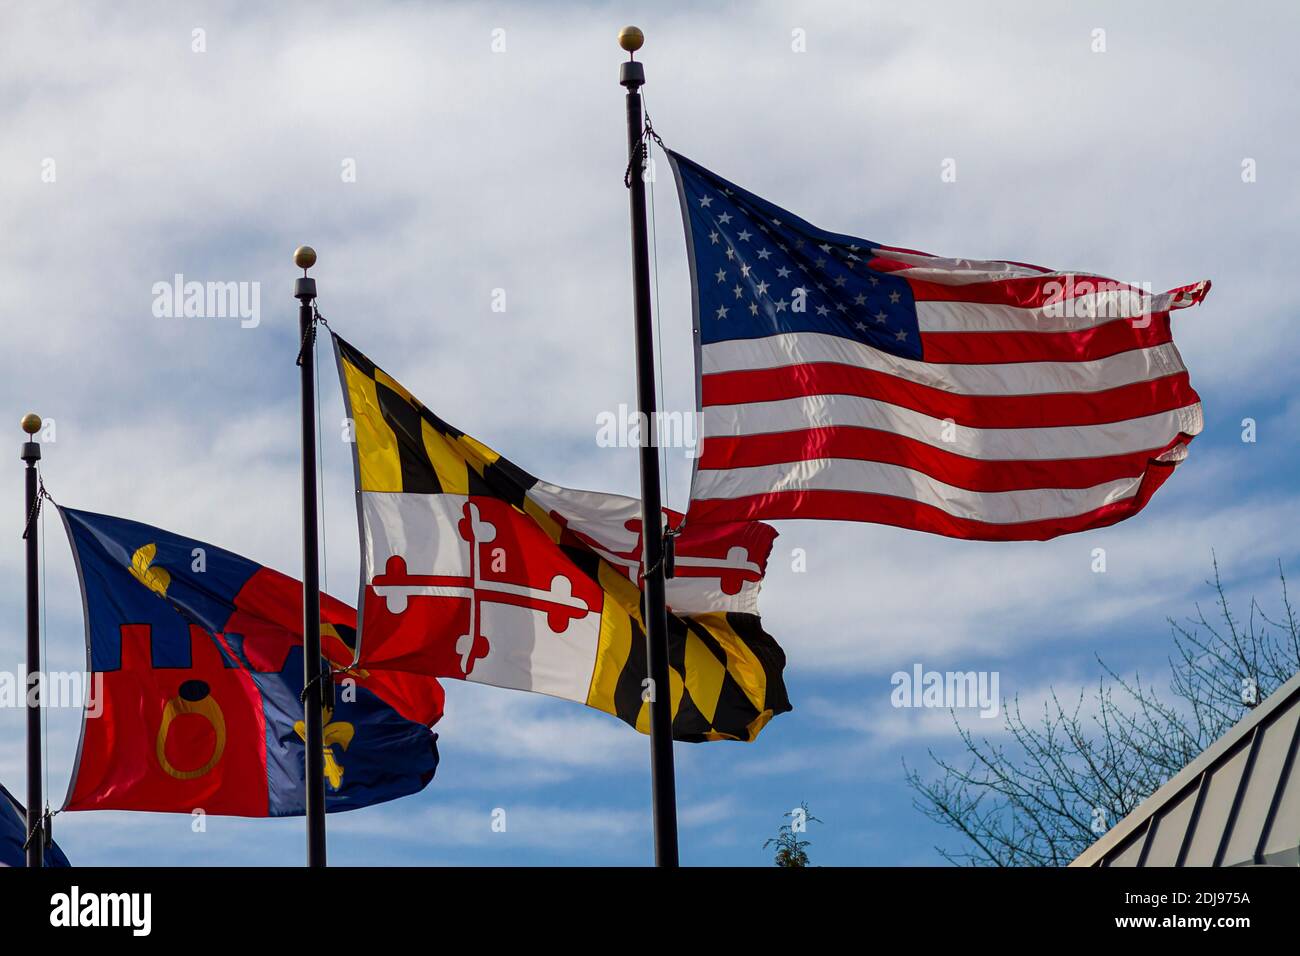 Threeflags sono a vela su pali bandiere separate contro il cielo blu in una giornata ventosa. Da destra a sinistra si indicano: USA, stato del Maryland e Montgomer Foto Stock